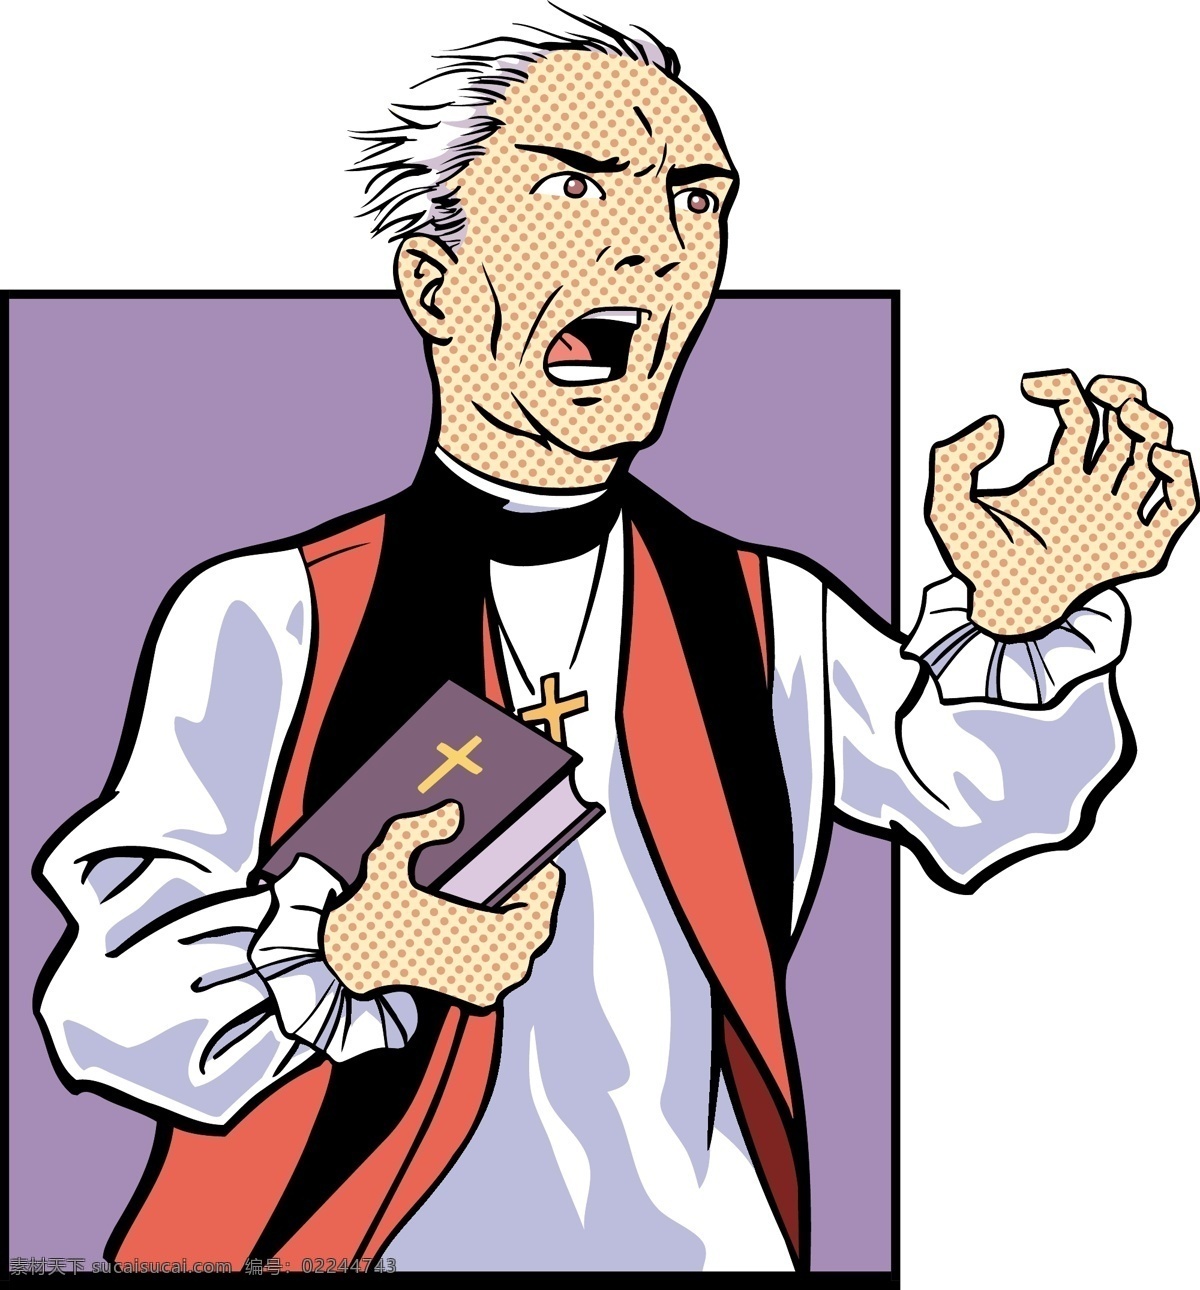 神父免费下载 漫画人物 人物 神父 教堂素材 矢量图 矢量人物